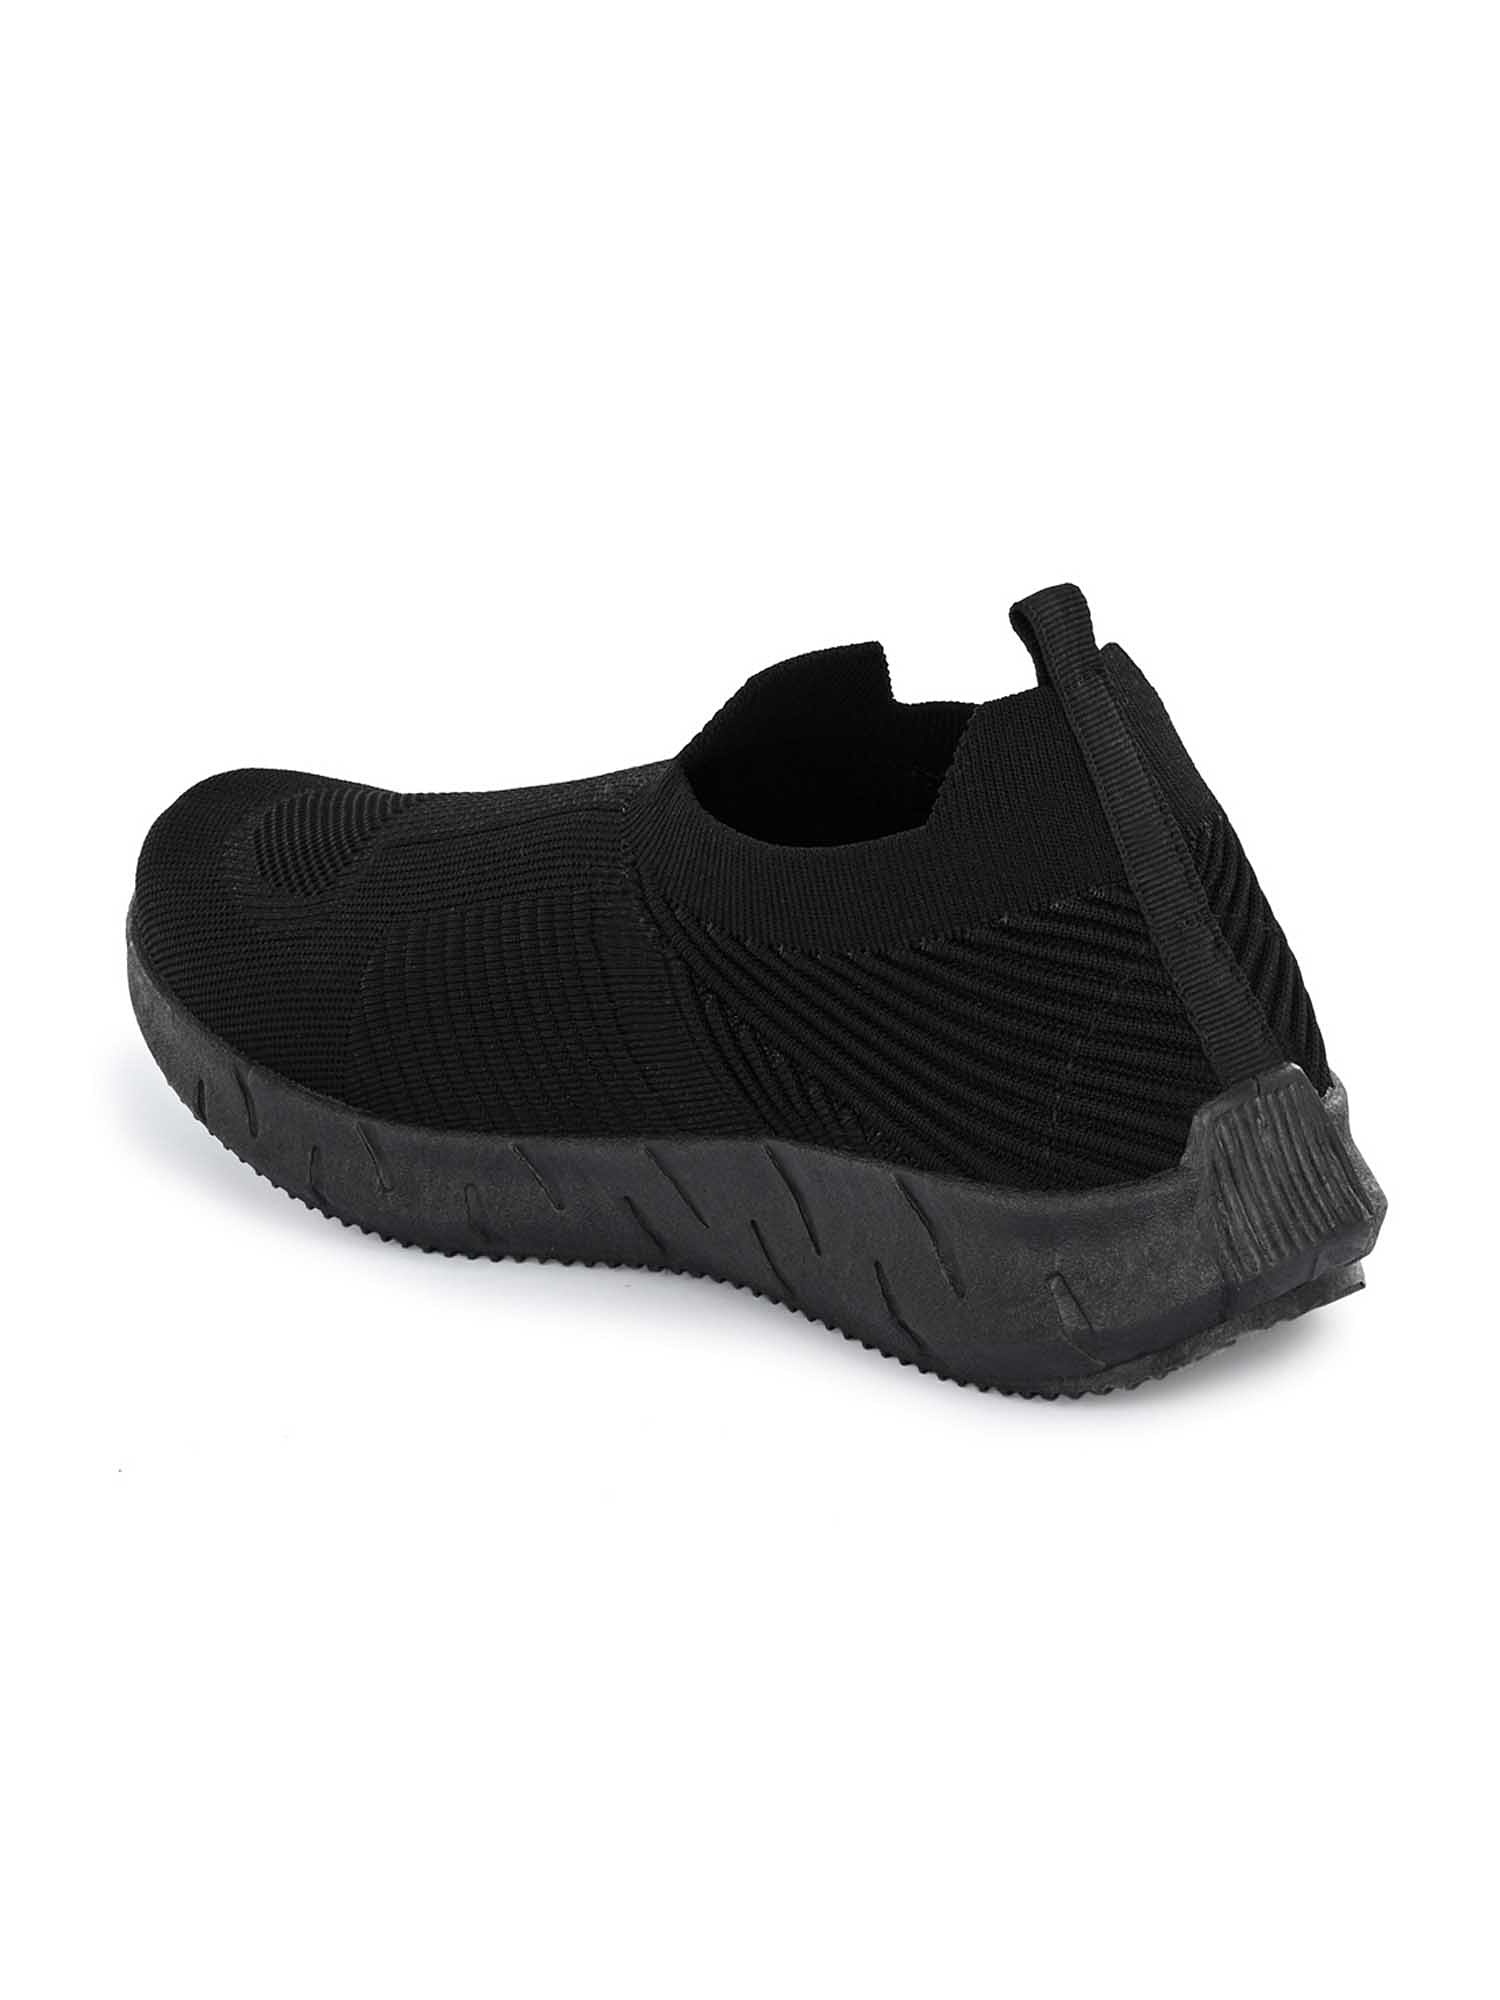 Pair-it Men's Sports Shoes - Black-LZ-SPORTS008